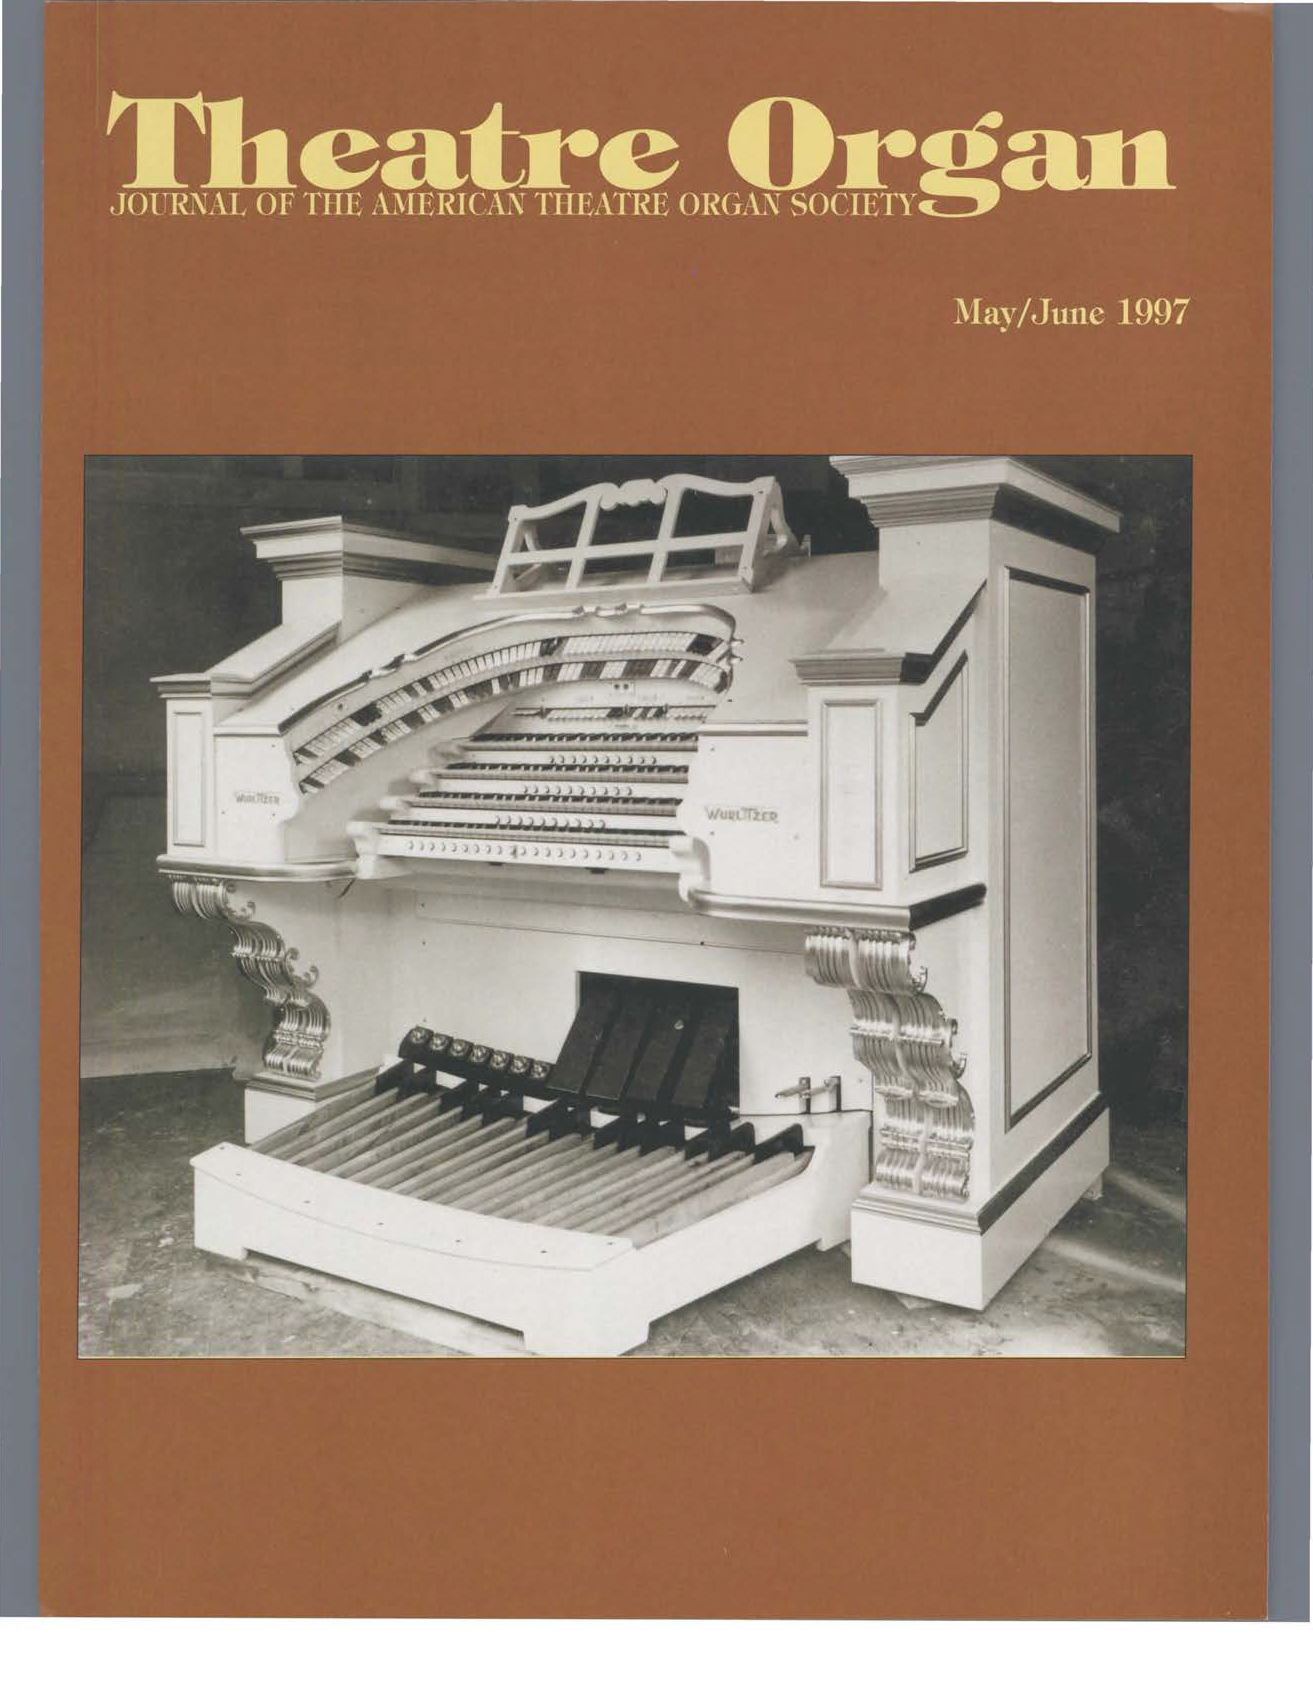 Theatre Organ, May - June 1997, Volume 39, Number 3